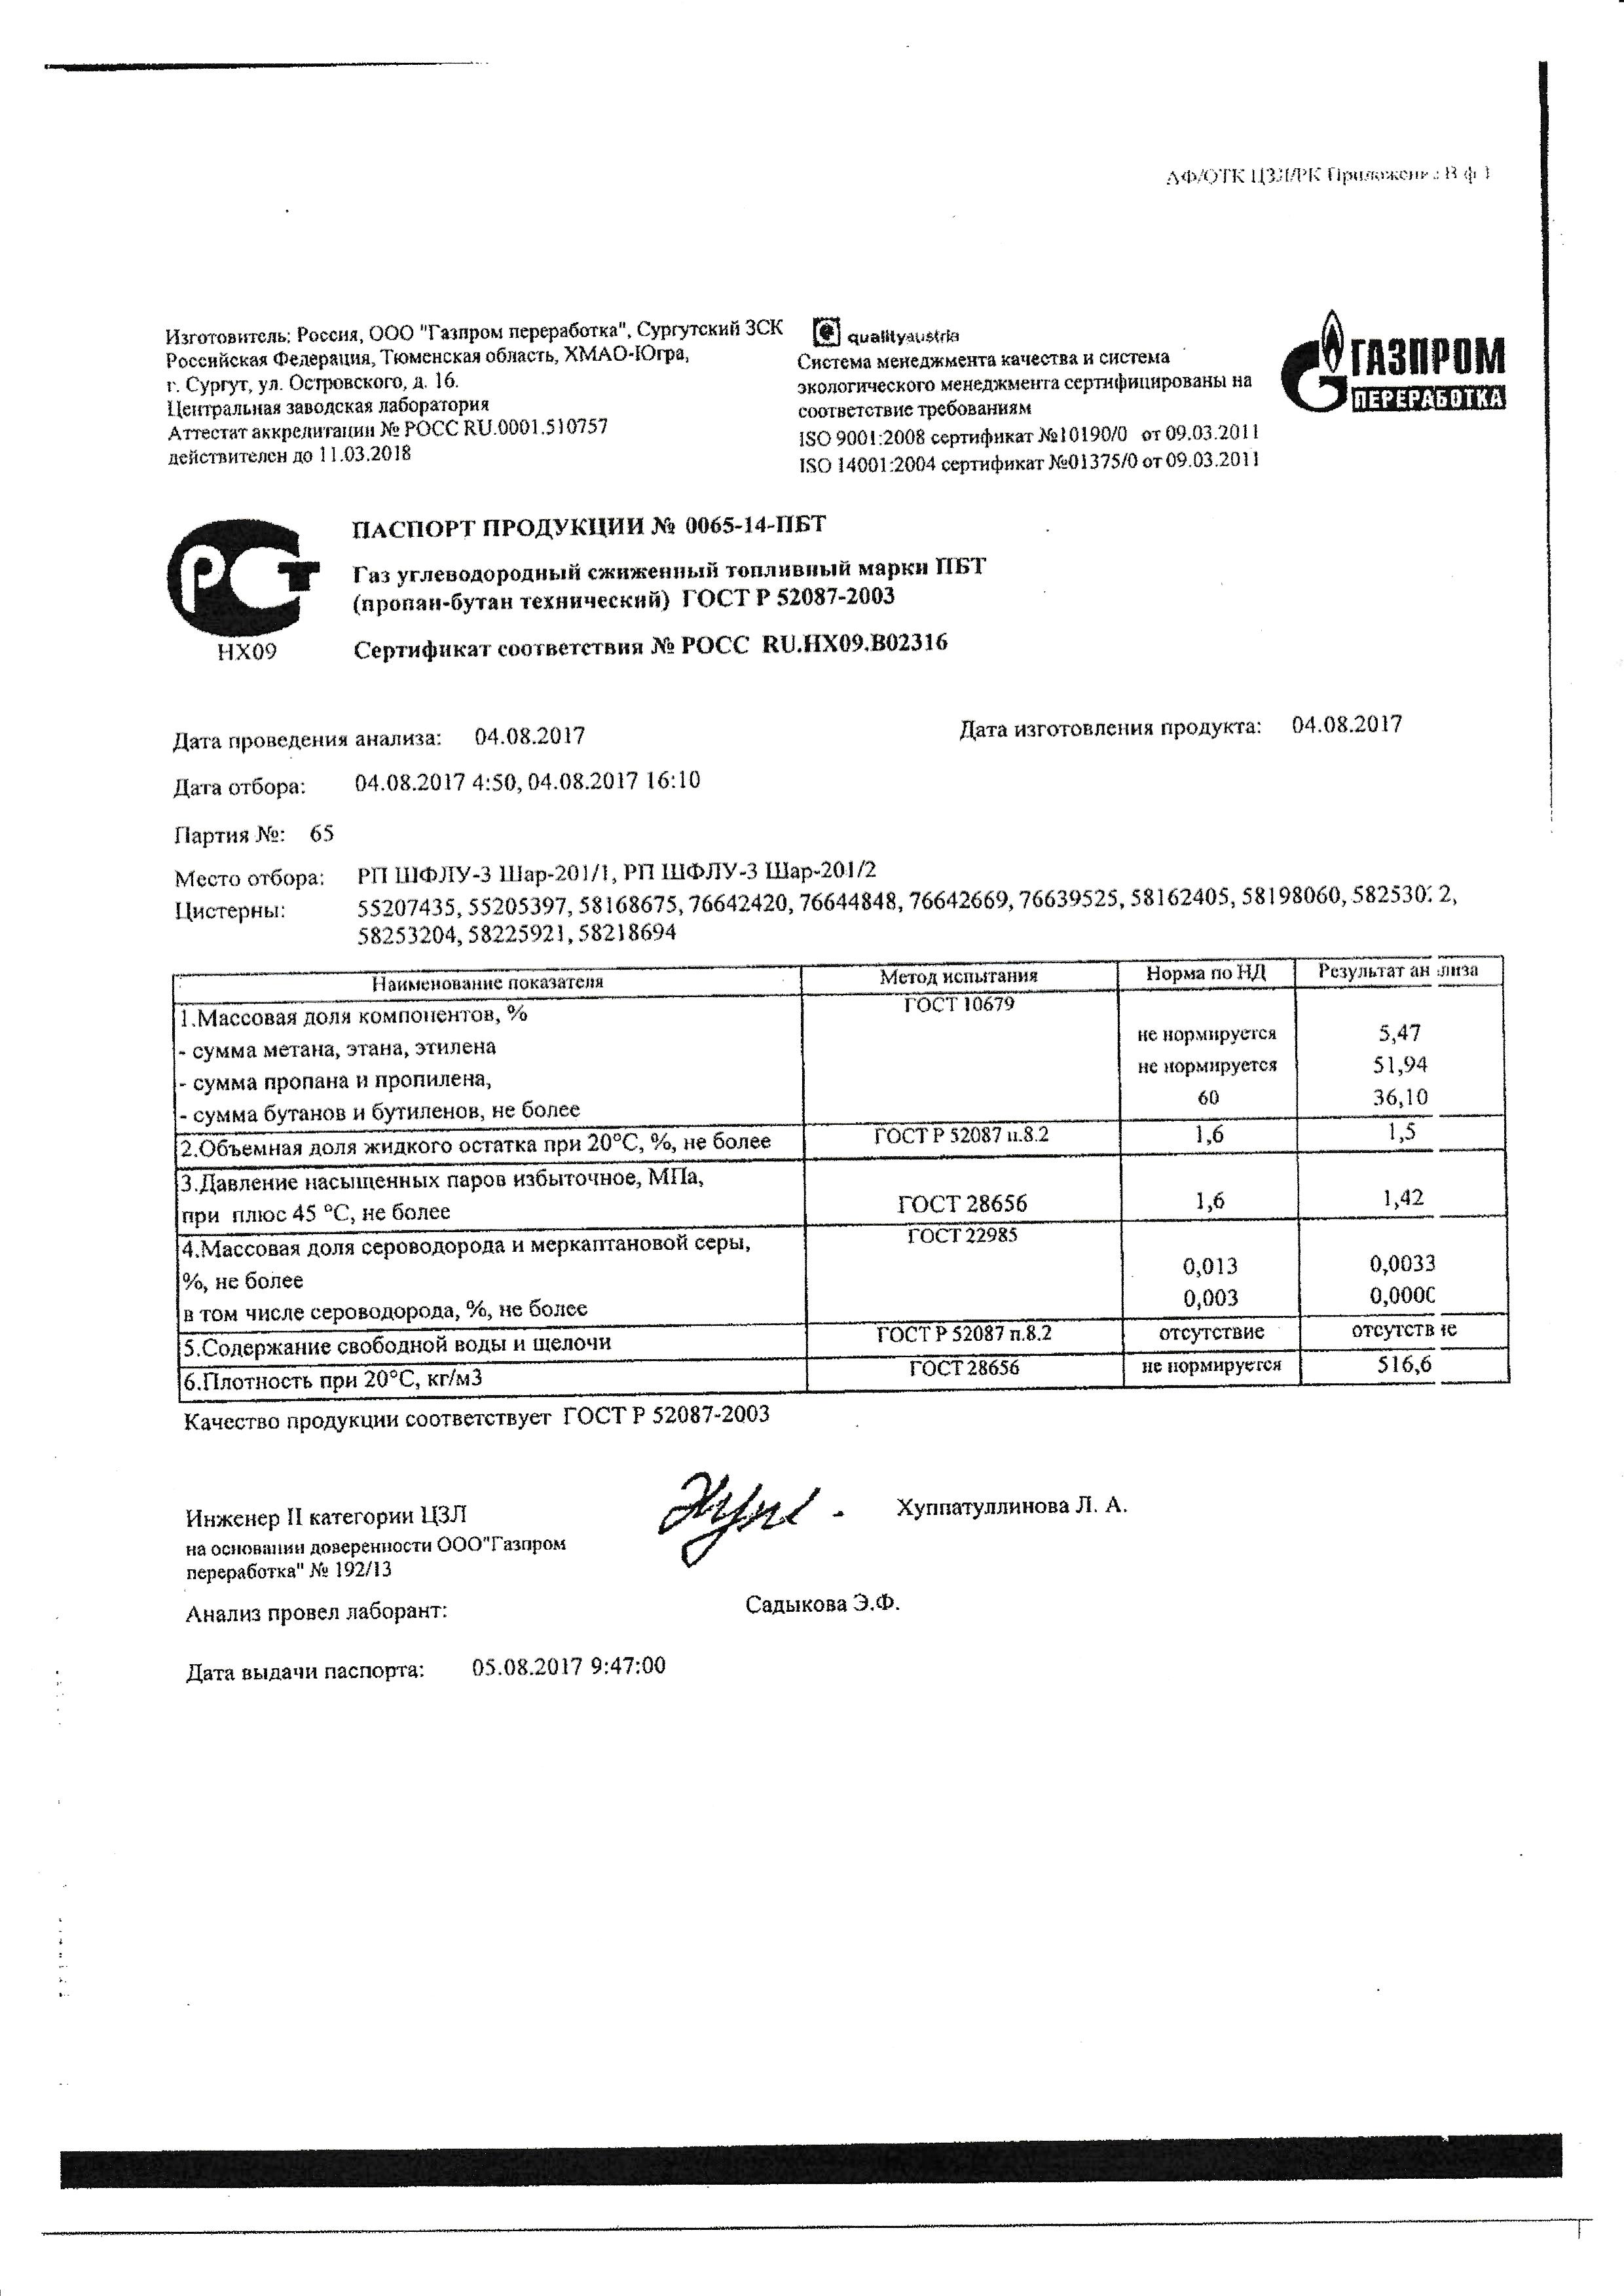 Бутан гост. Пропан-бутан смесь техническая сертификат соответствия. Пропан-бутан газообразный сертификат соответствия.